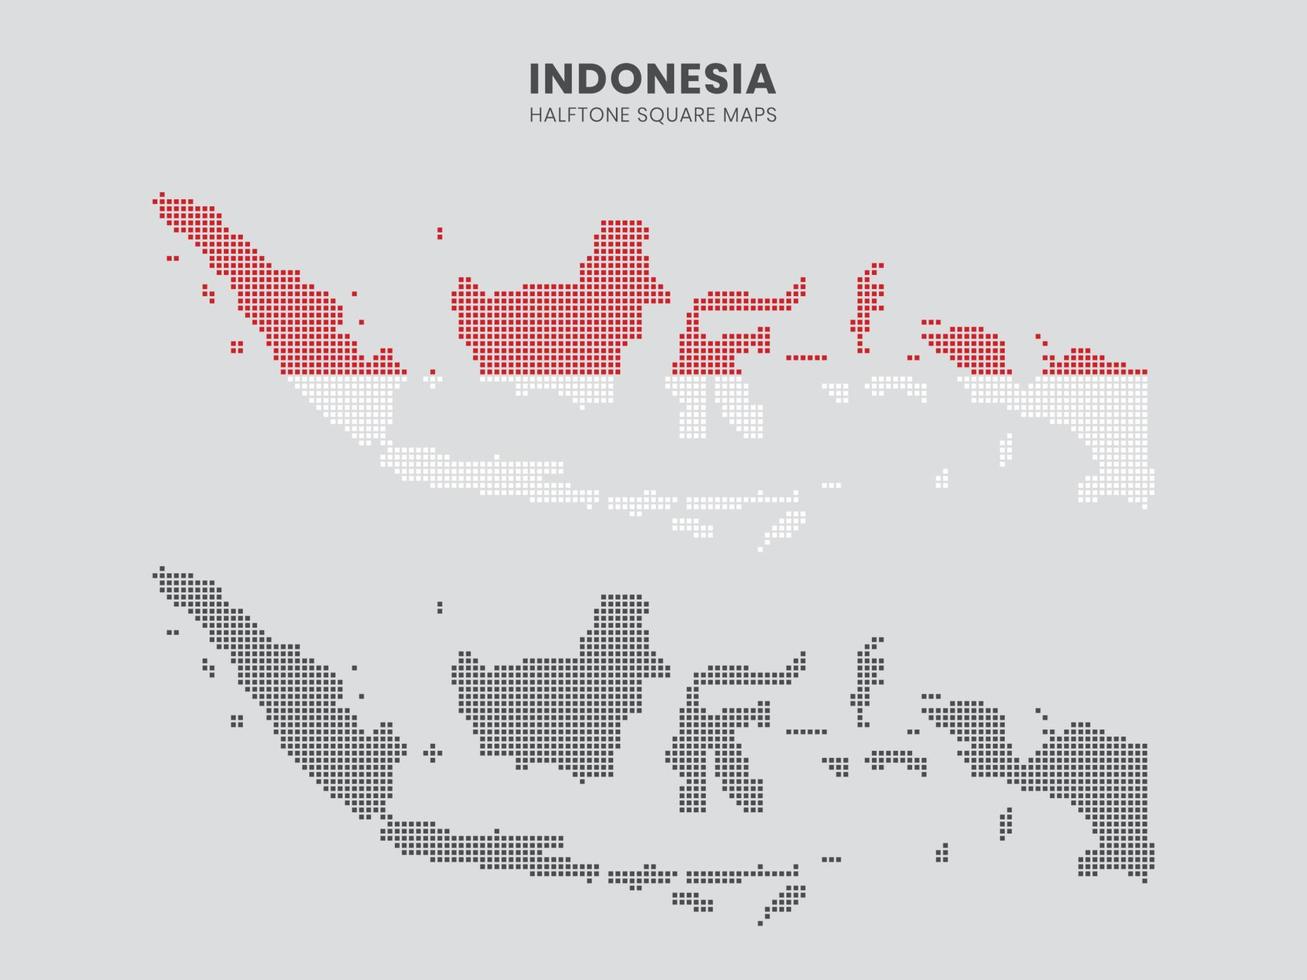 indonesiska halvtons kvadratiska kartor vektor